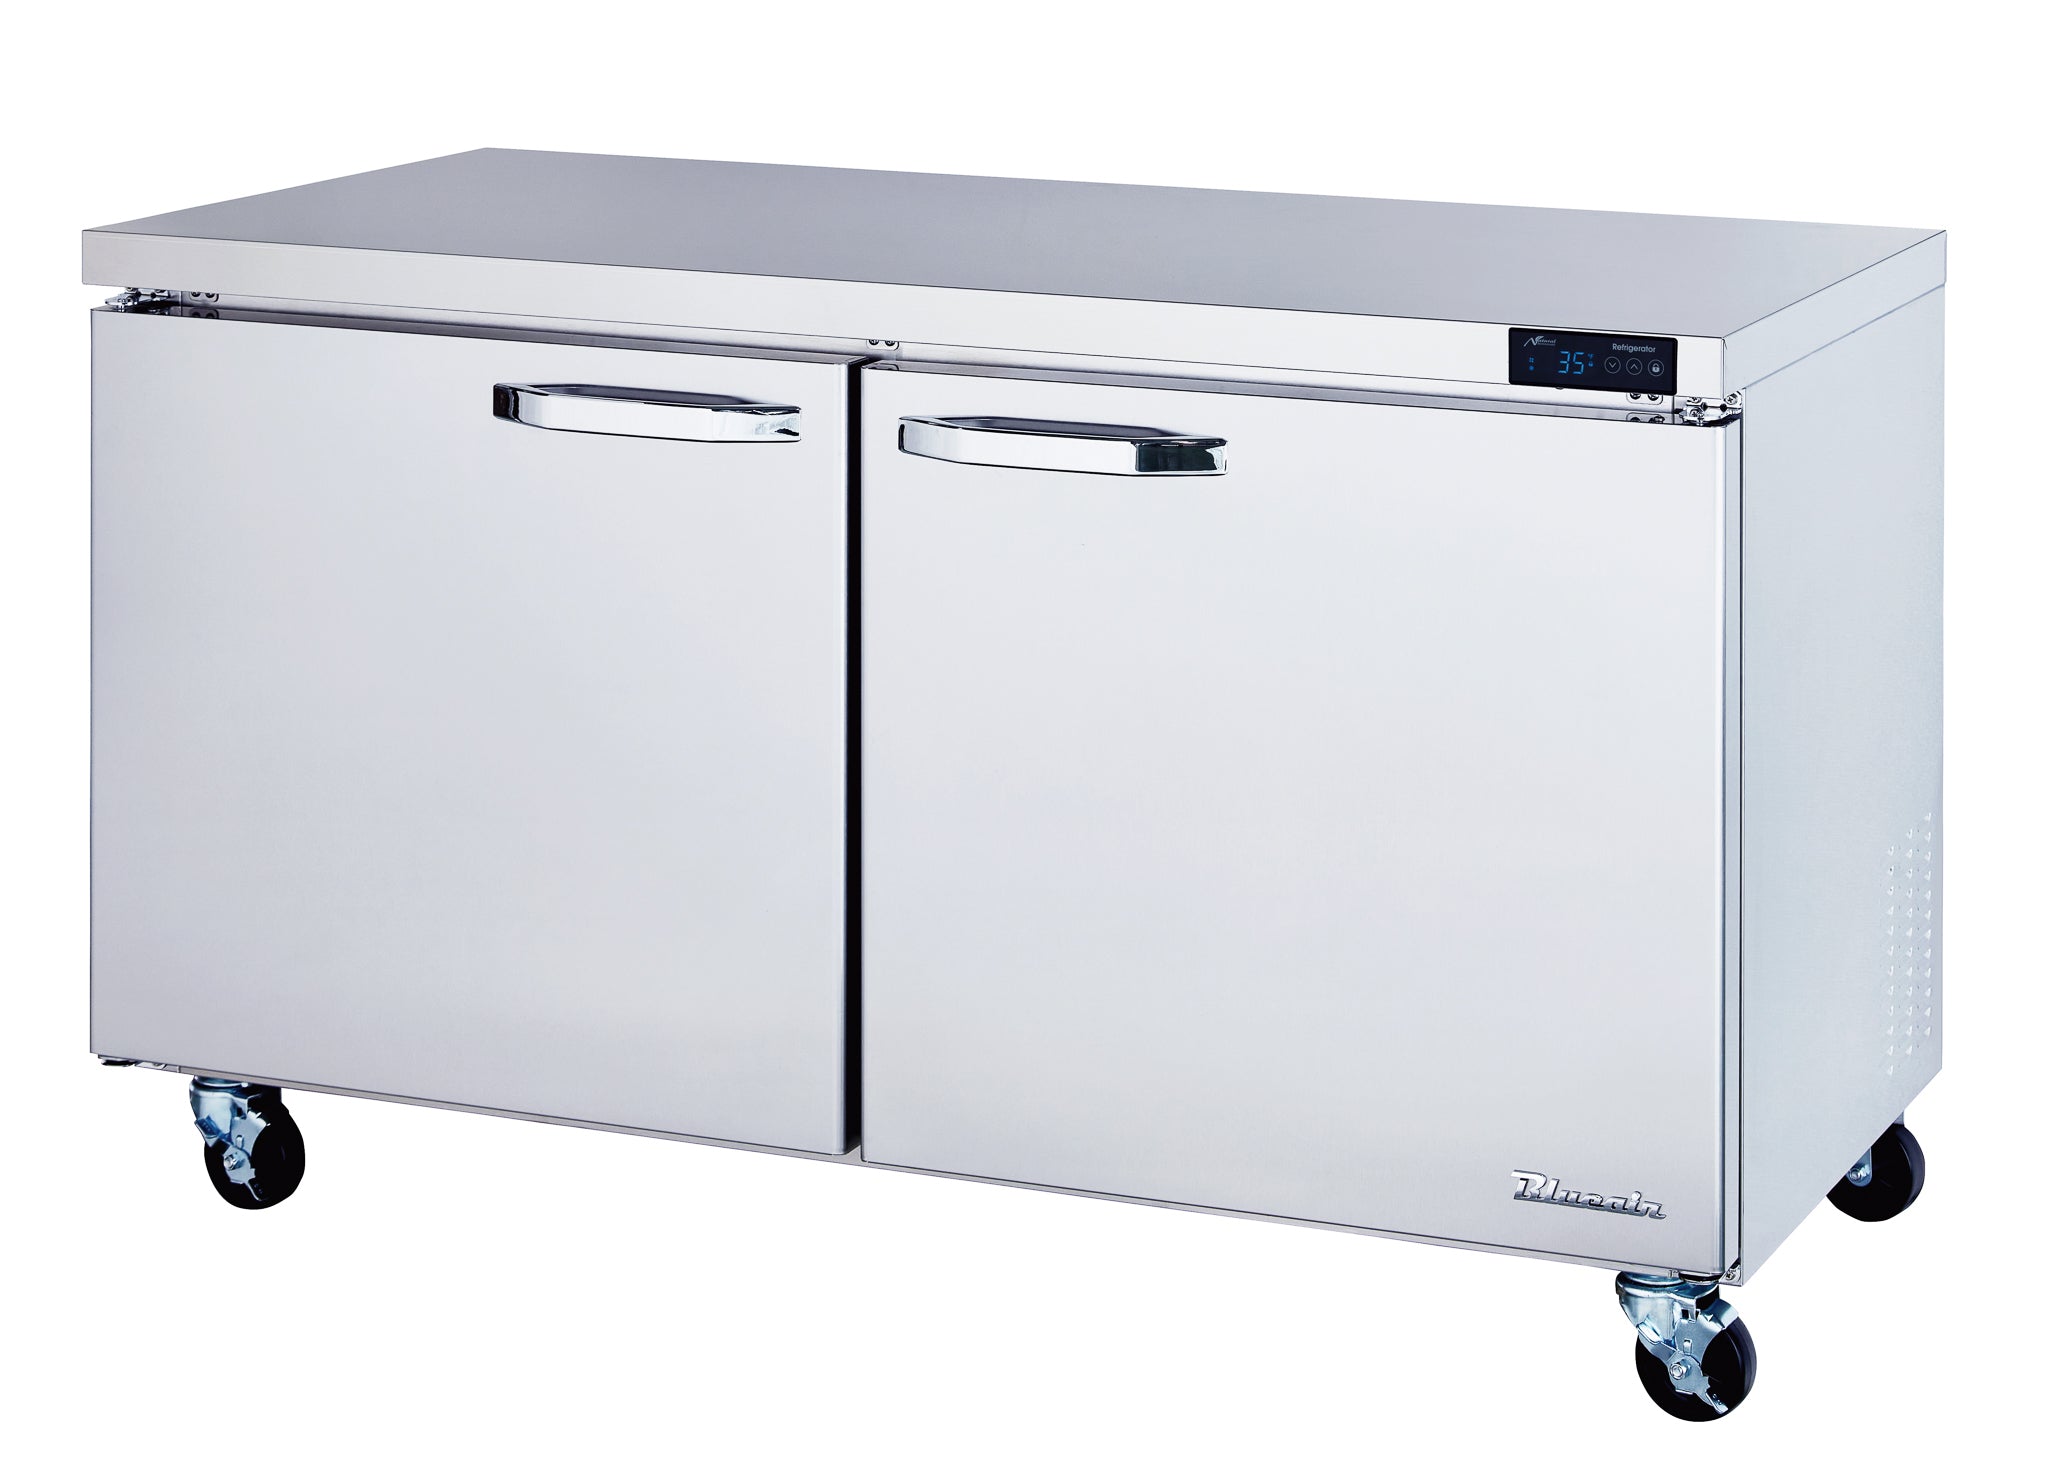 Blue Air - BLUR60-HC, 2 Doors All Stainless Undercounter Refrigerator - 60" wide, 16.5 cu/ft., R-290 Refrigerant